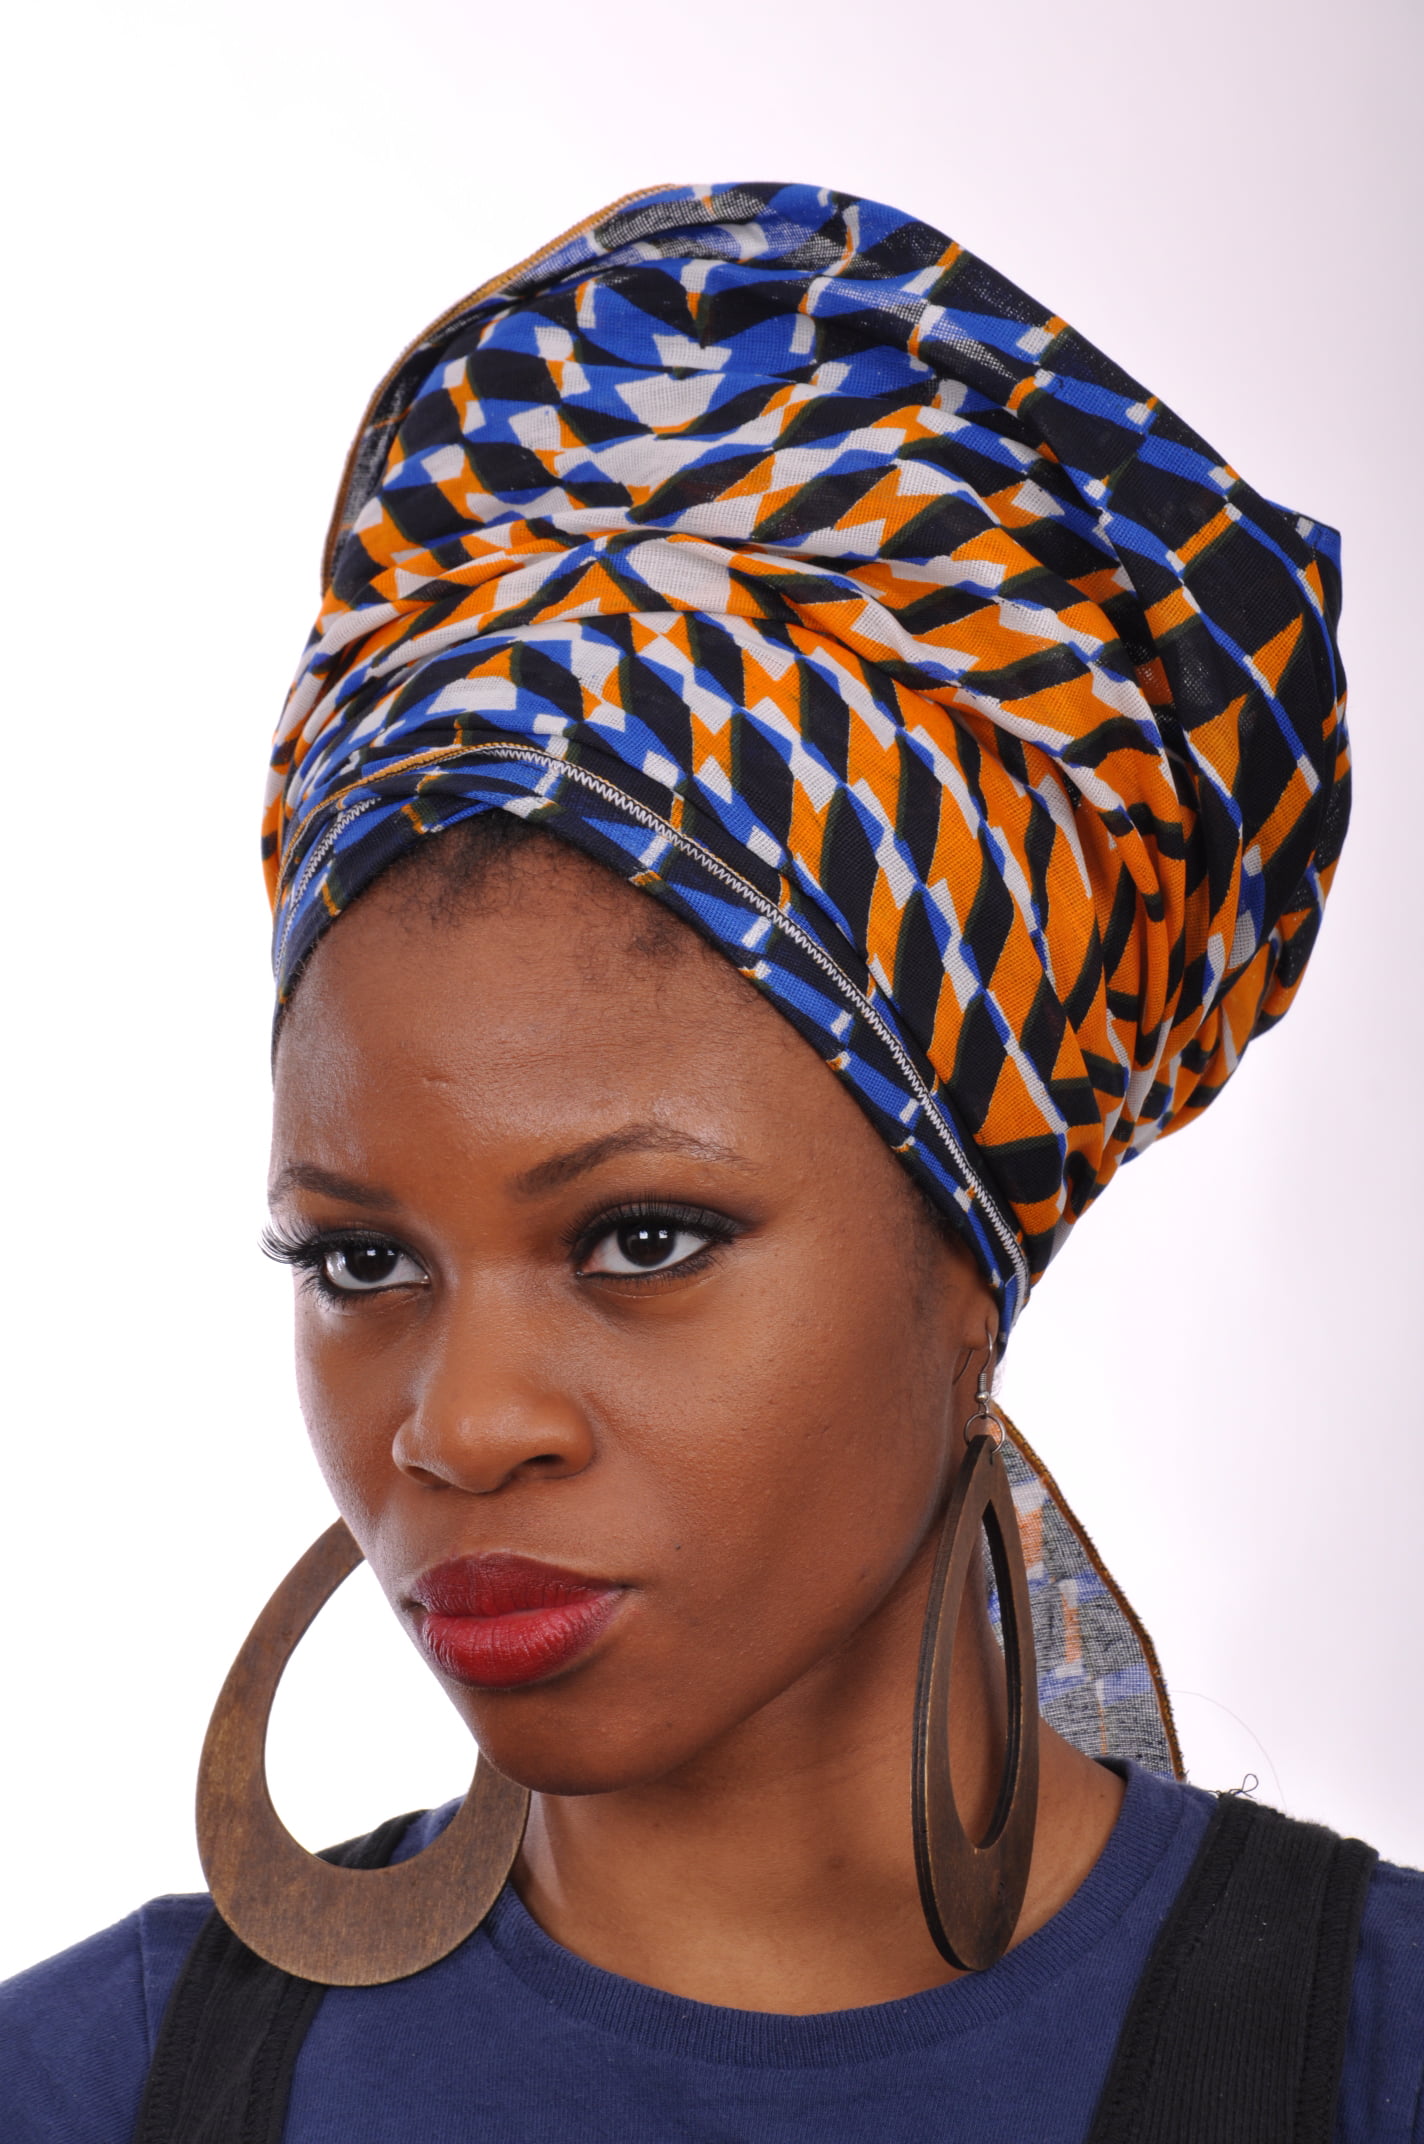 African scarf Ankara Fabric African Headwrap Ankara Headwraps Head wraps Headwraps Ankara Scarfs